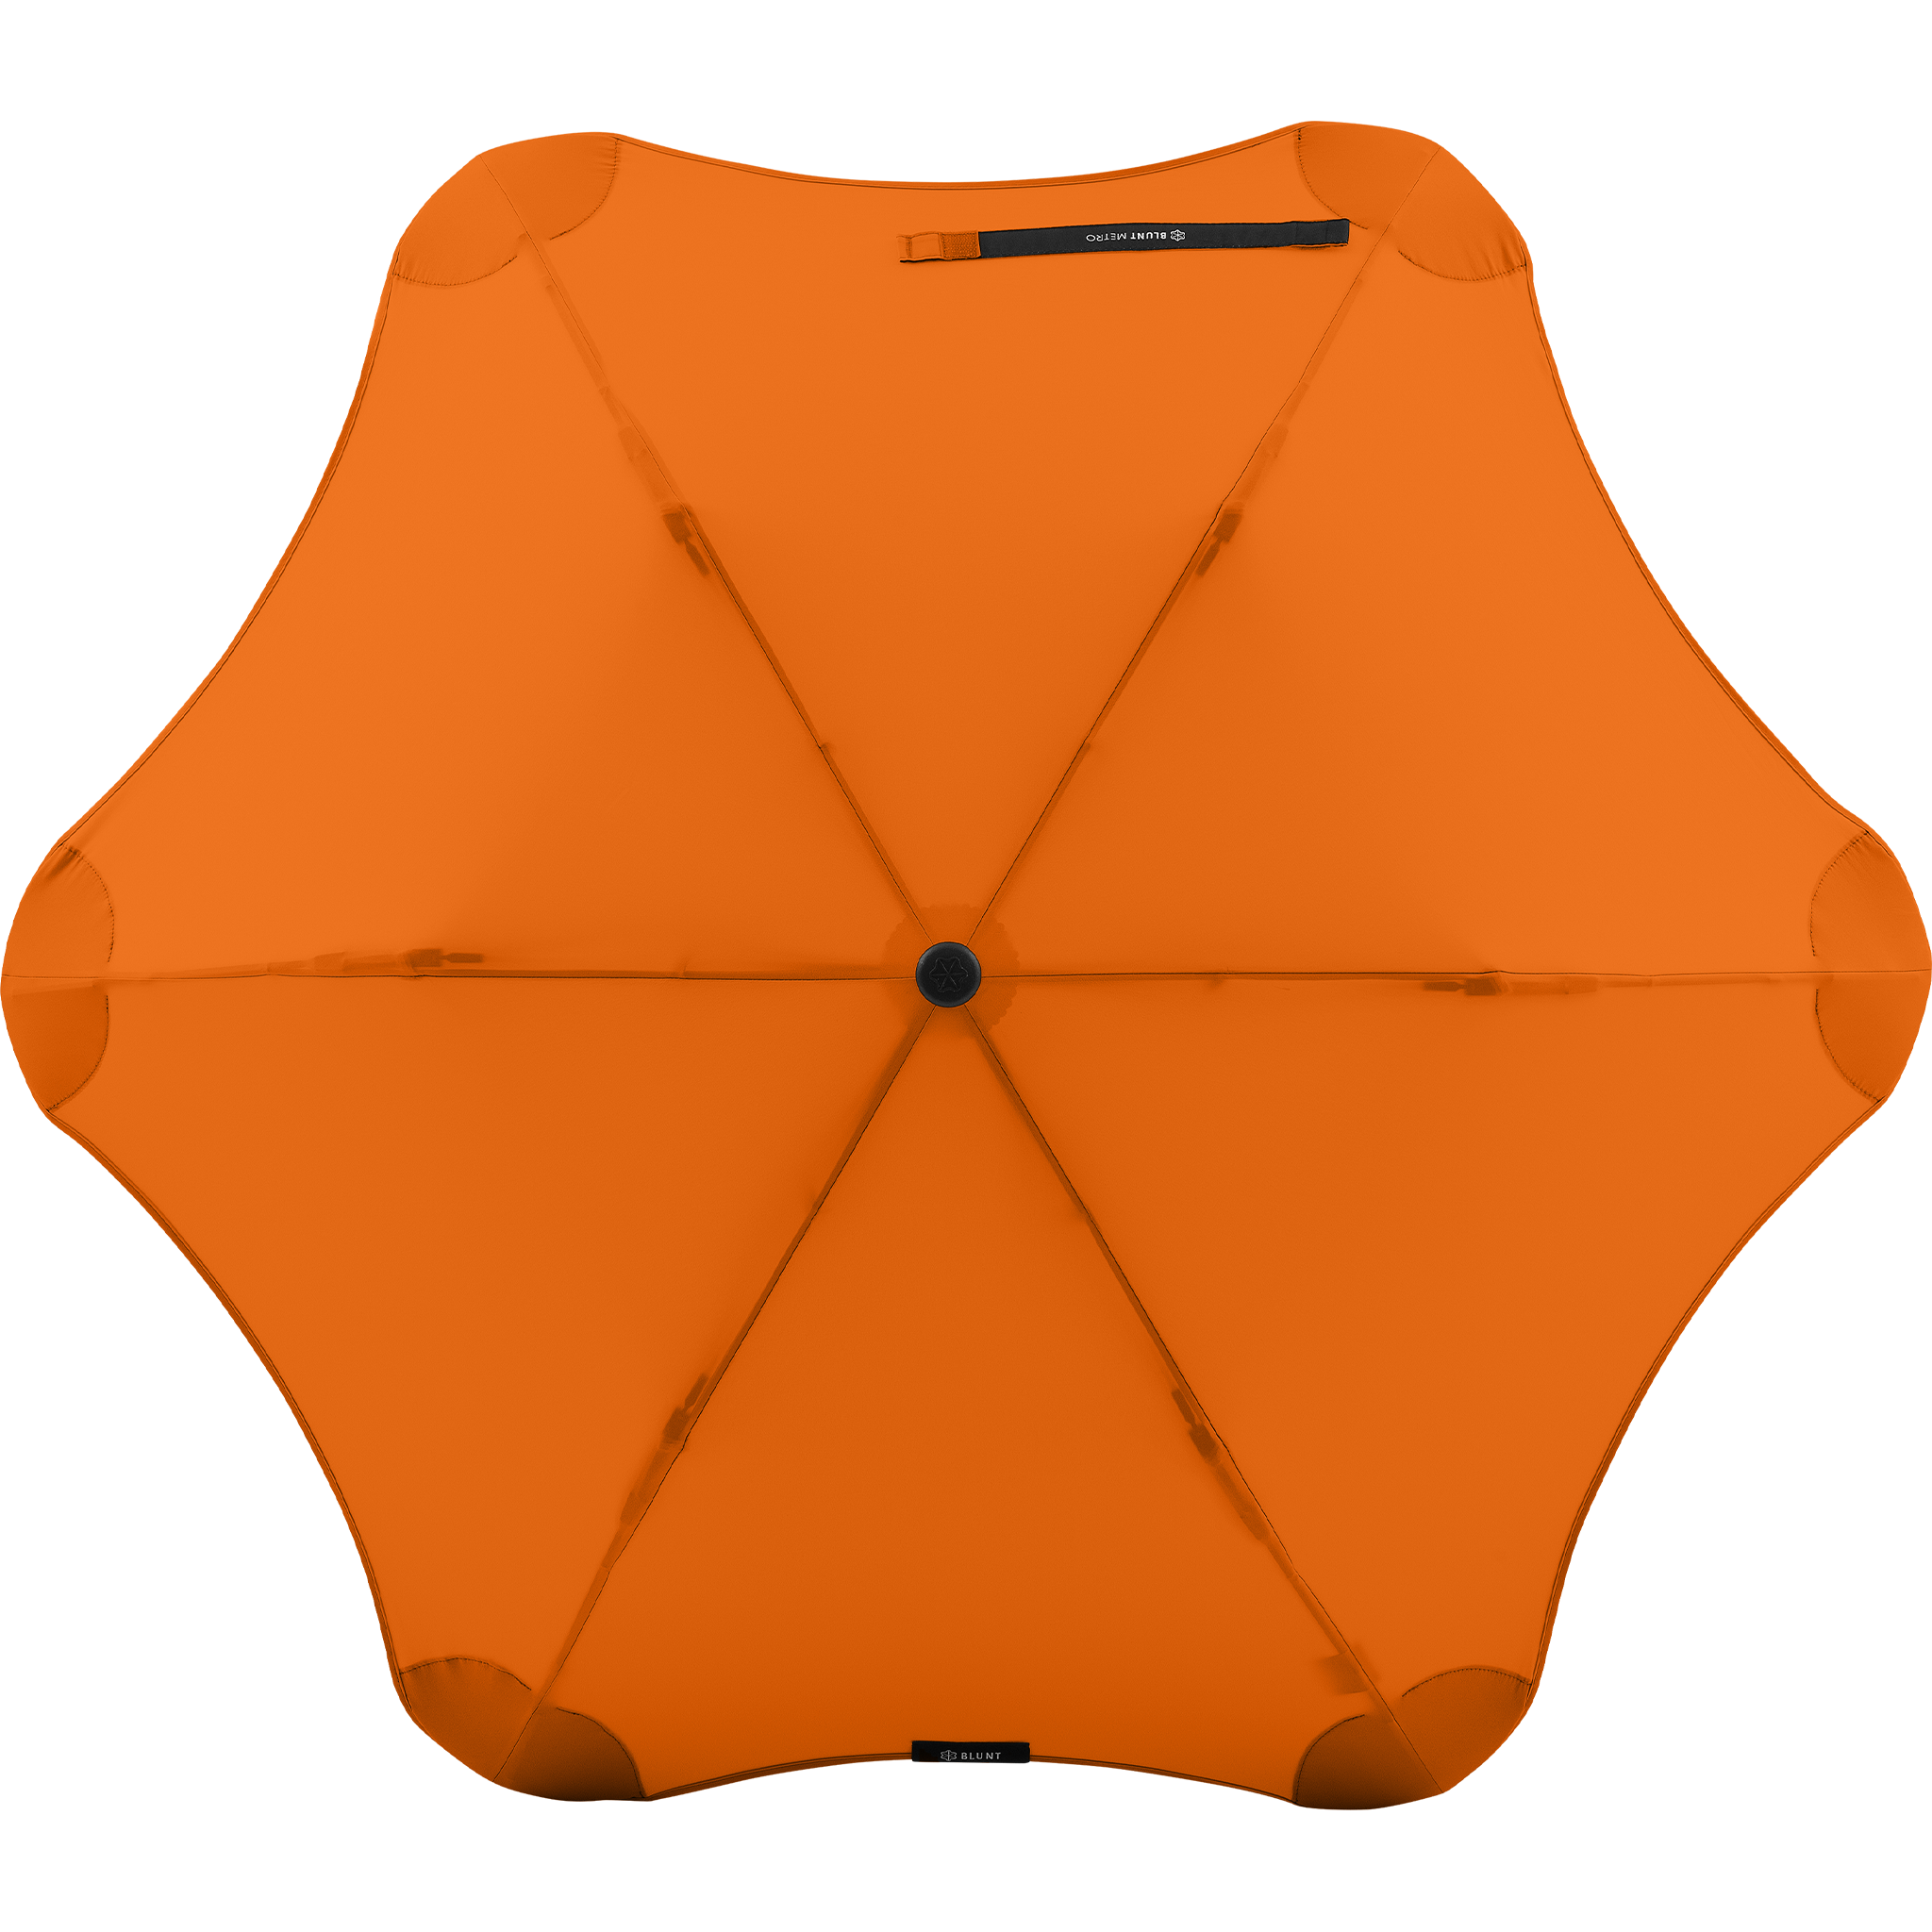 2020 Metro Orange Blunt Umbrella Top View